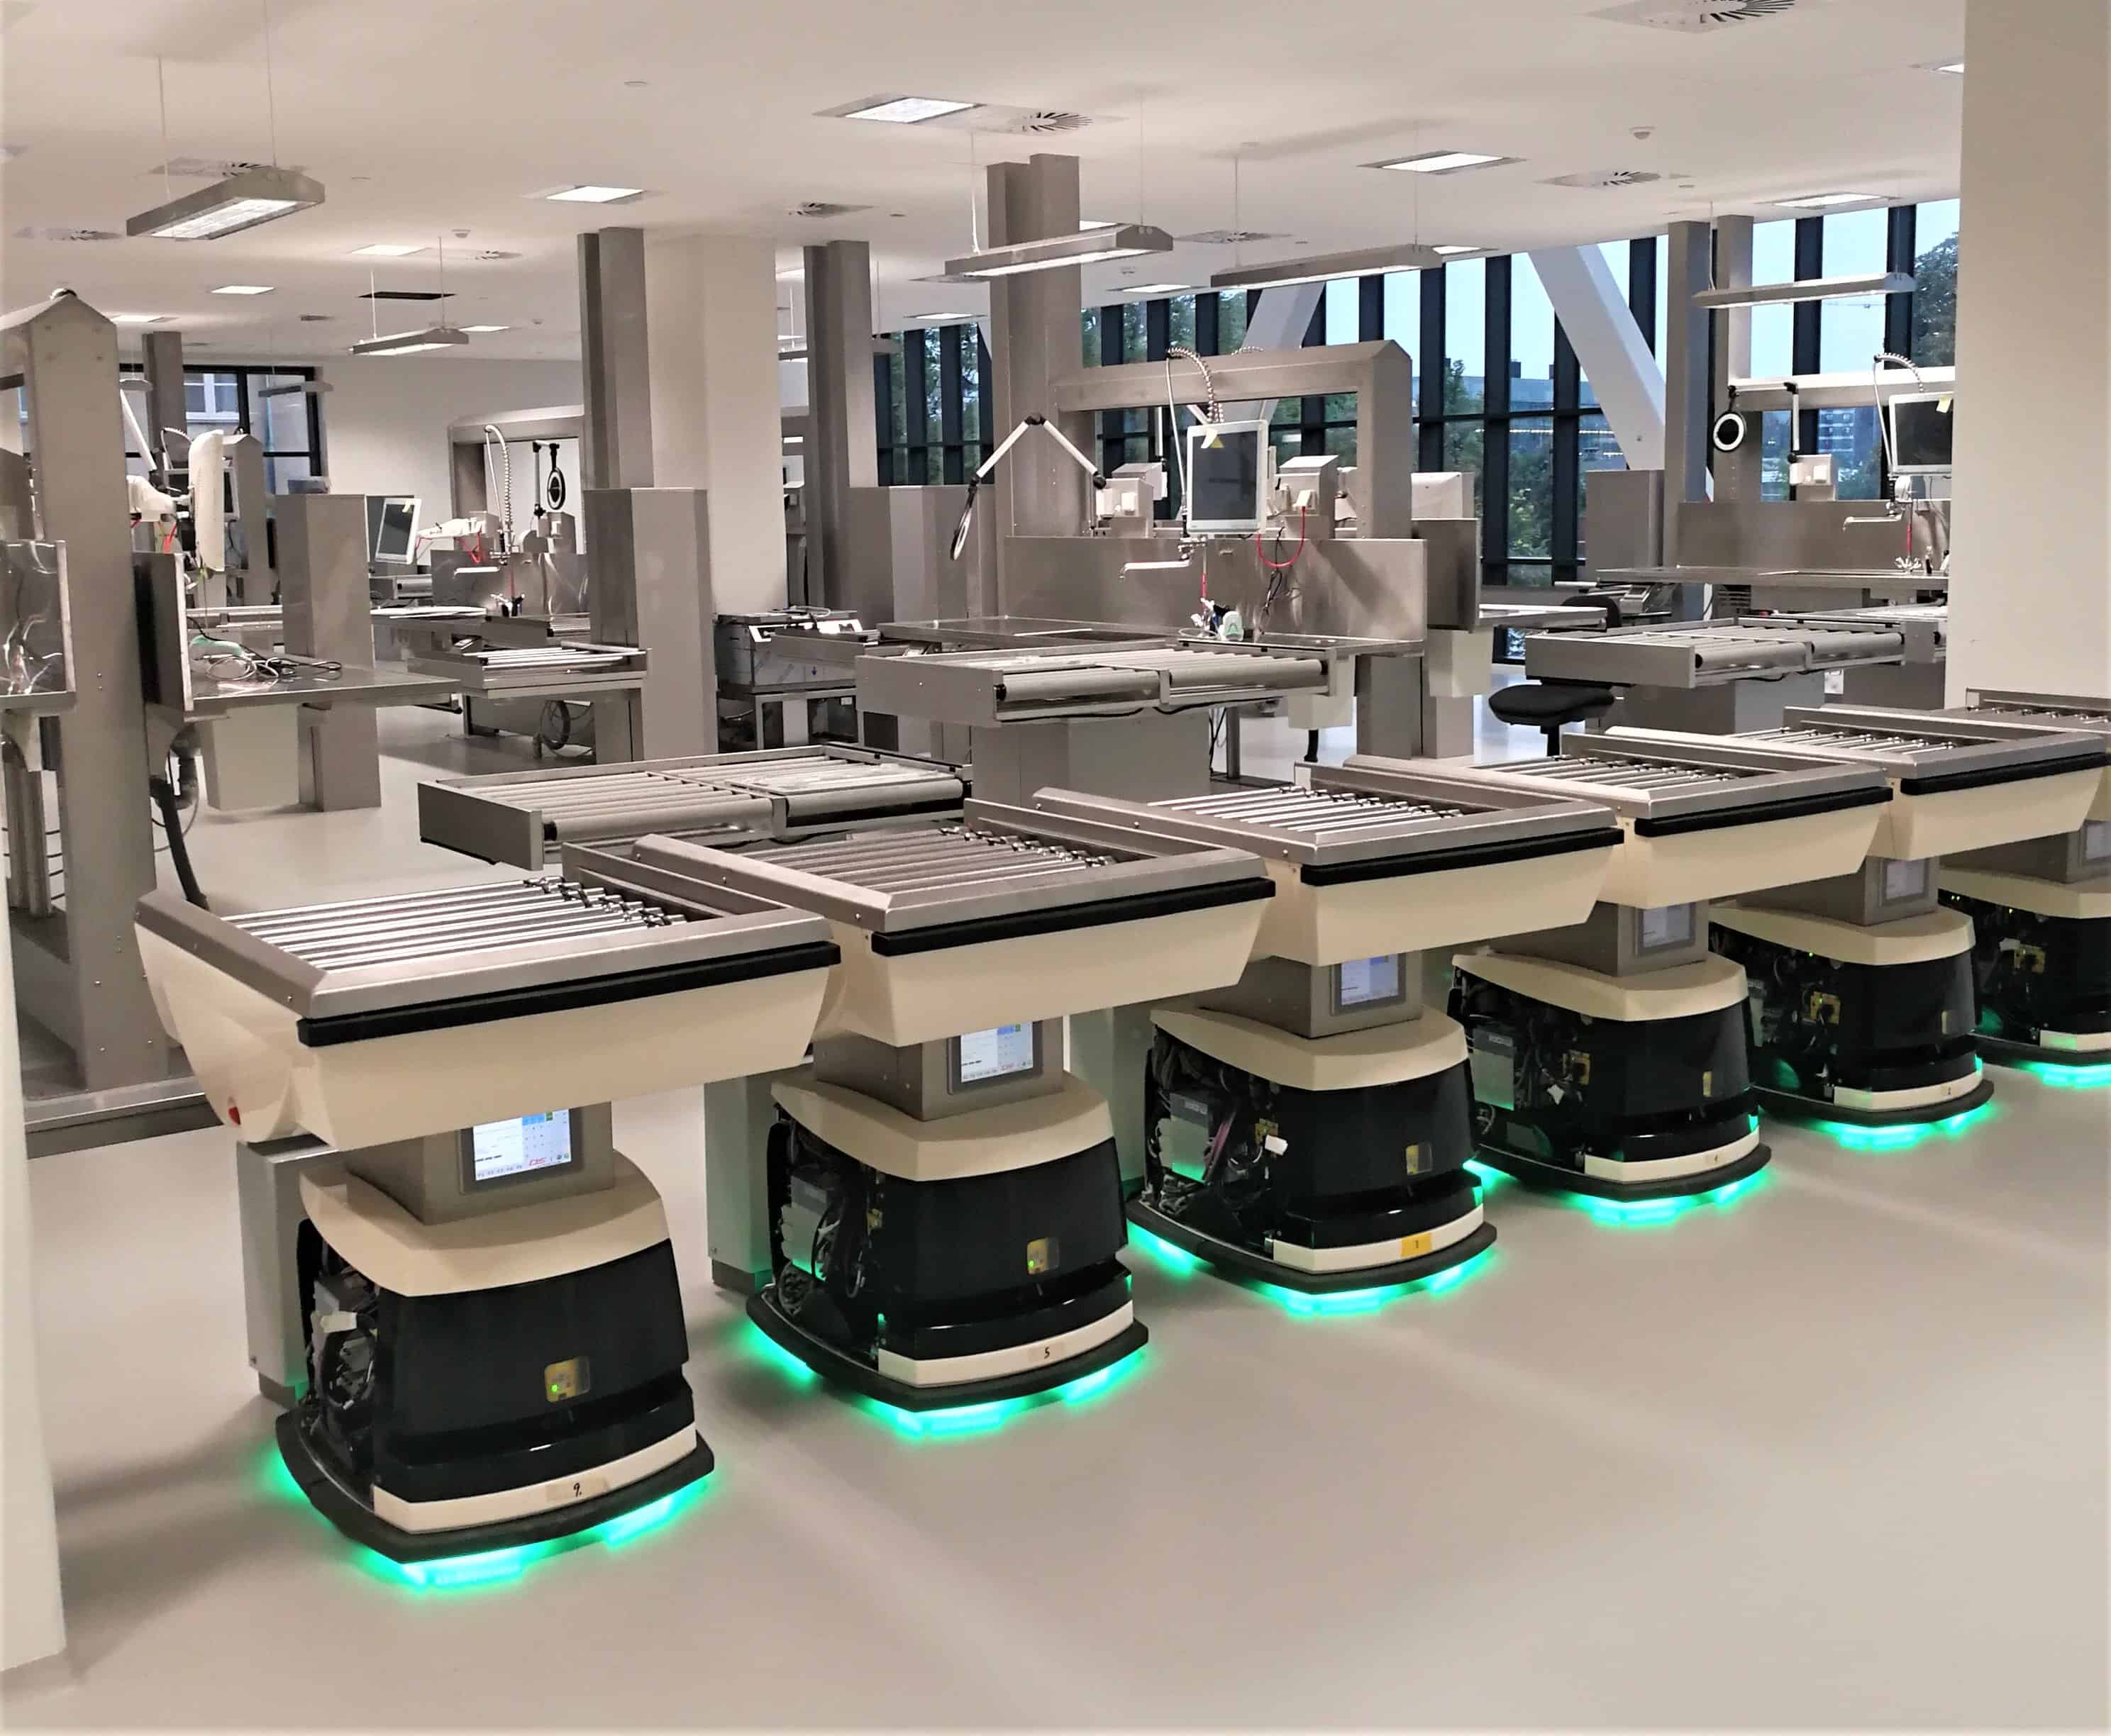 Mobile robotter til hospitaler & sundhedsvæsenet Smart